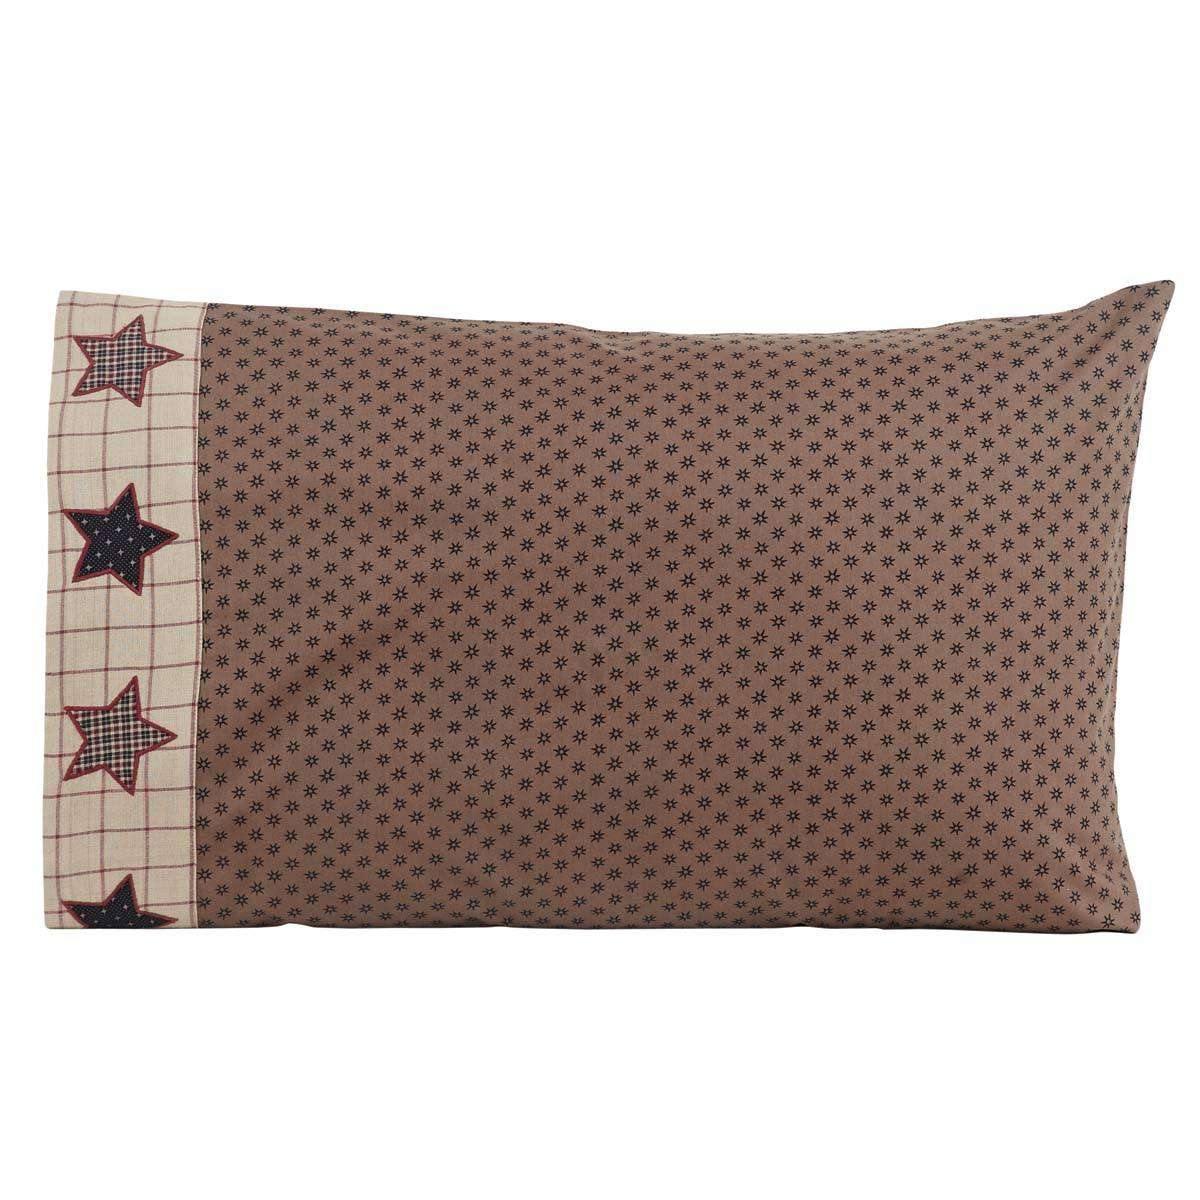 Bingham Star Standard Pillow Case Set of 2 21x30 VHC Brands - The Fox Decor